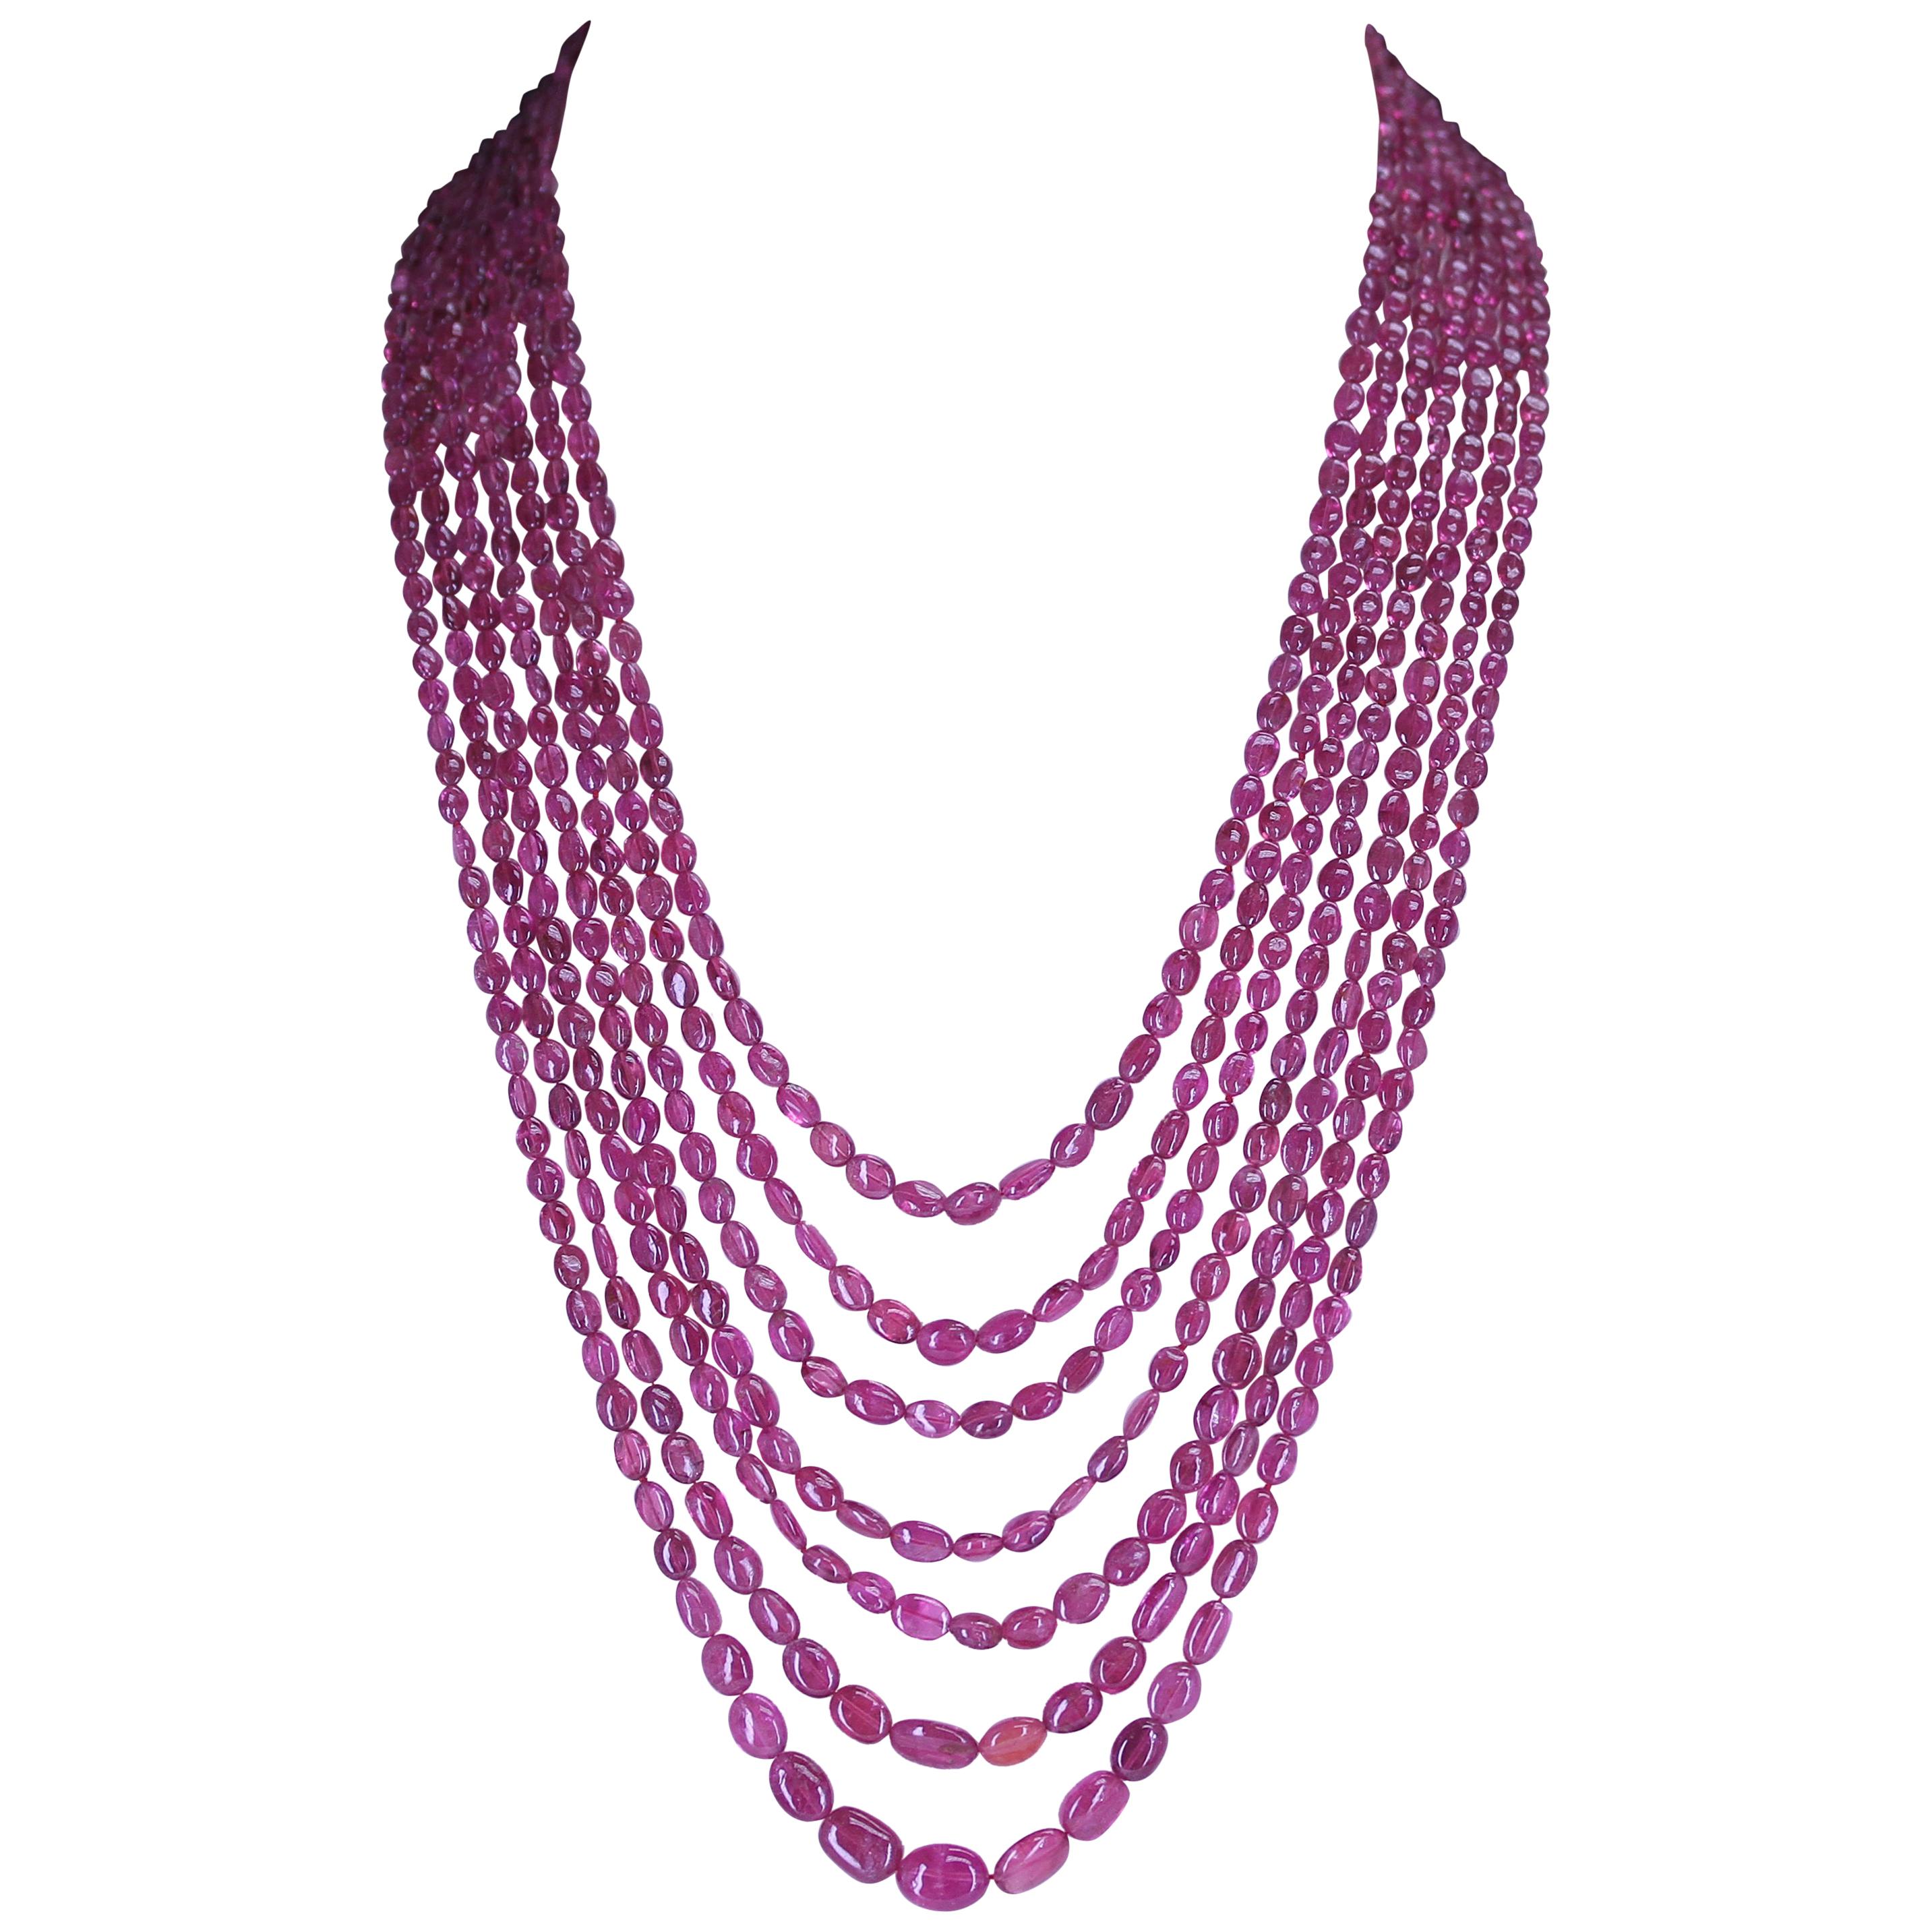 Halskette aus echtem und natürlichem rauchrosa Turmalin mit kleinen gewölbten Perlen, 7 Linien